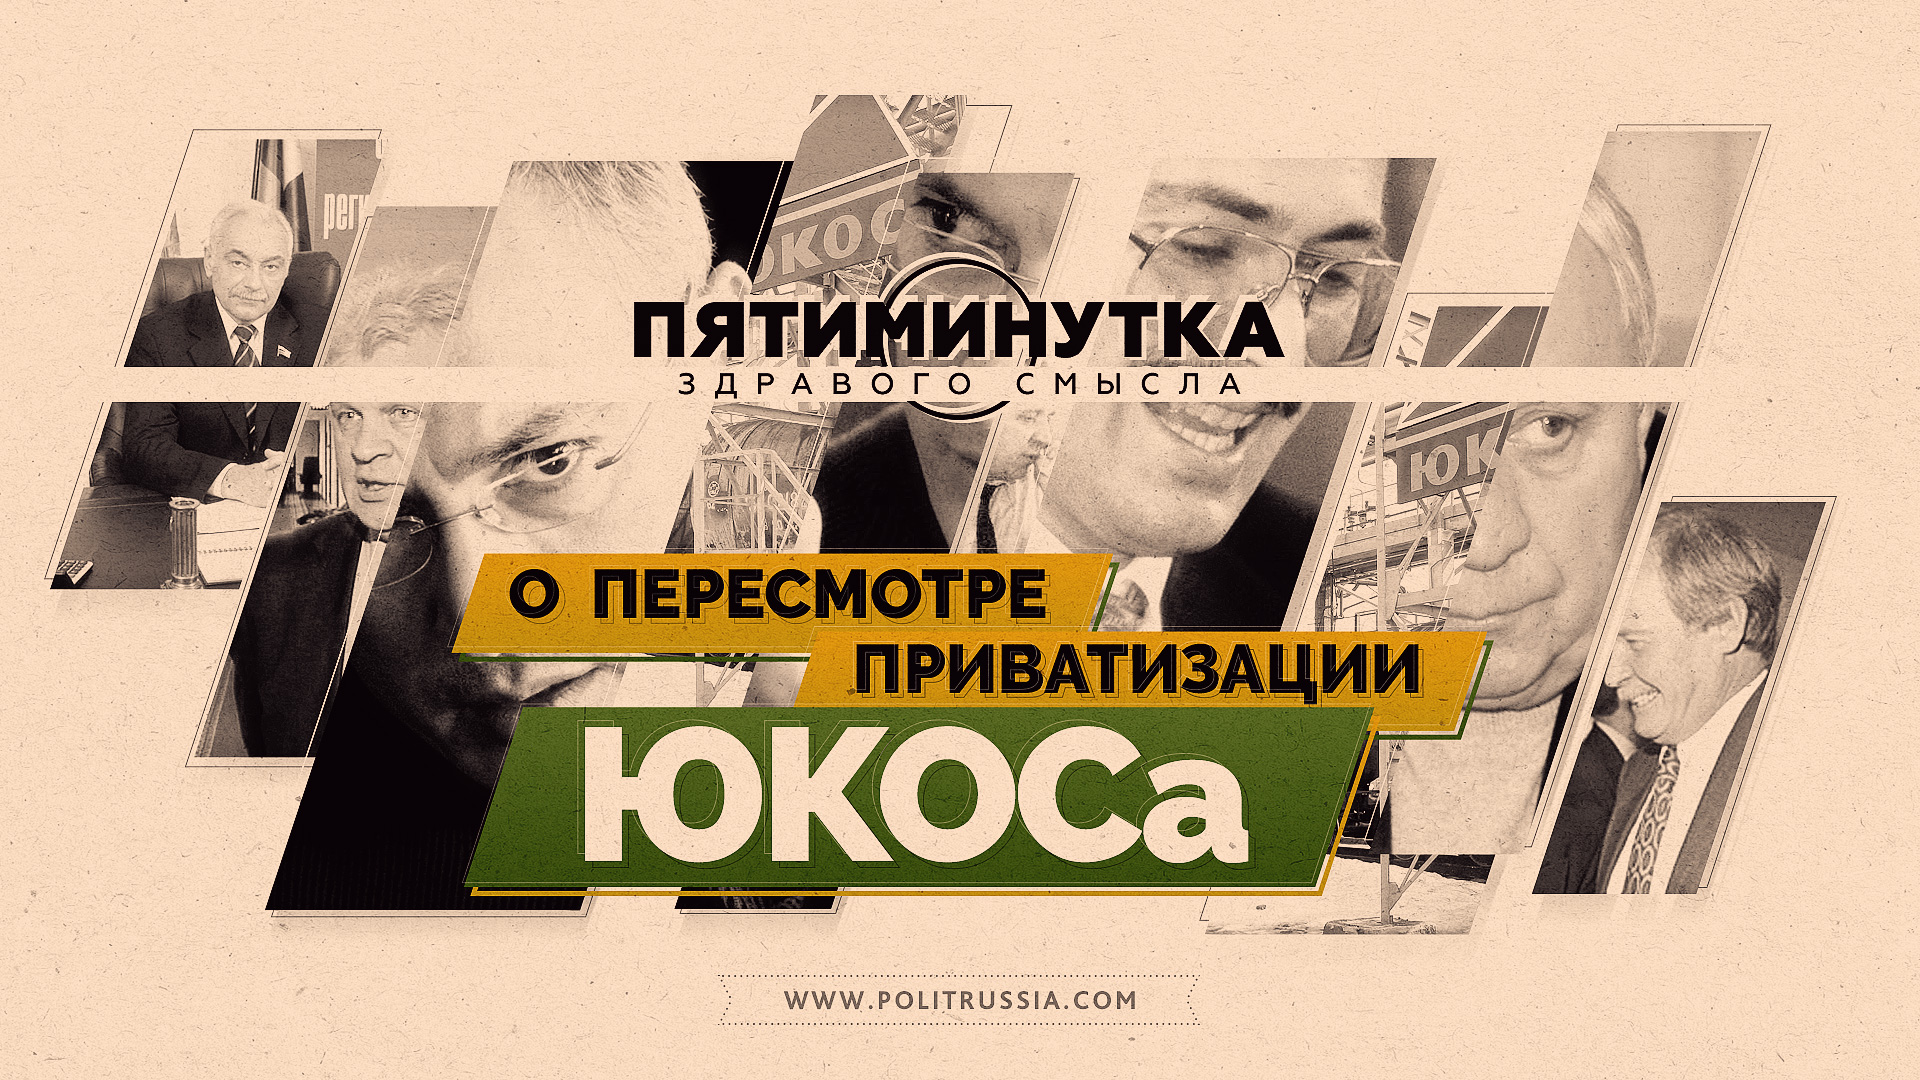 Пересмотр приватизации. Приватизации ЮКОСА. Пятиминутка здравого смысла о путинских миллиардах.